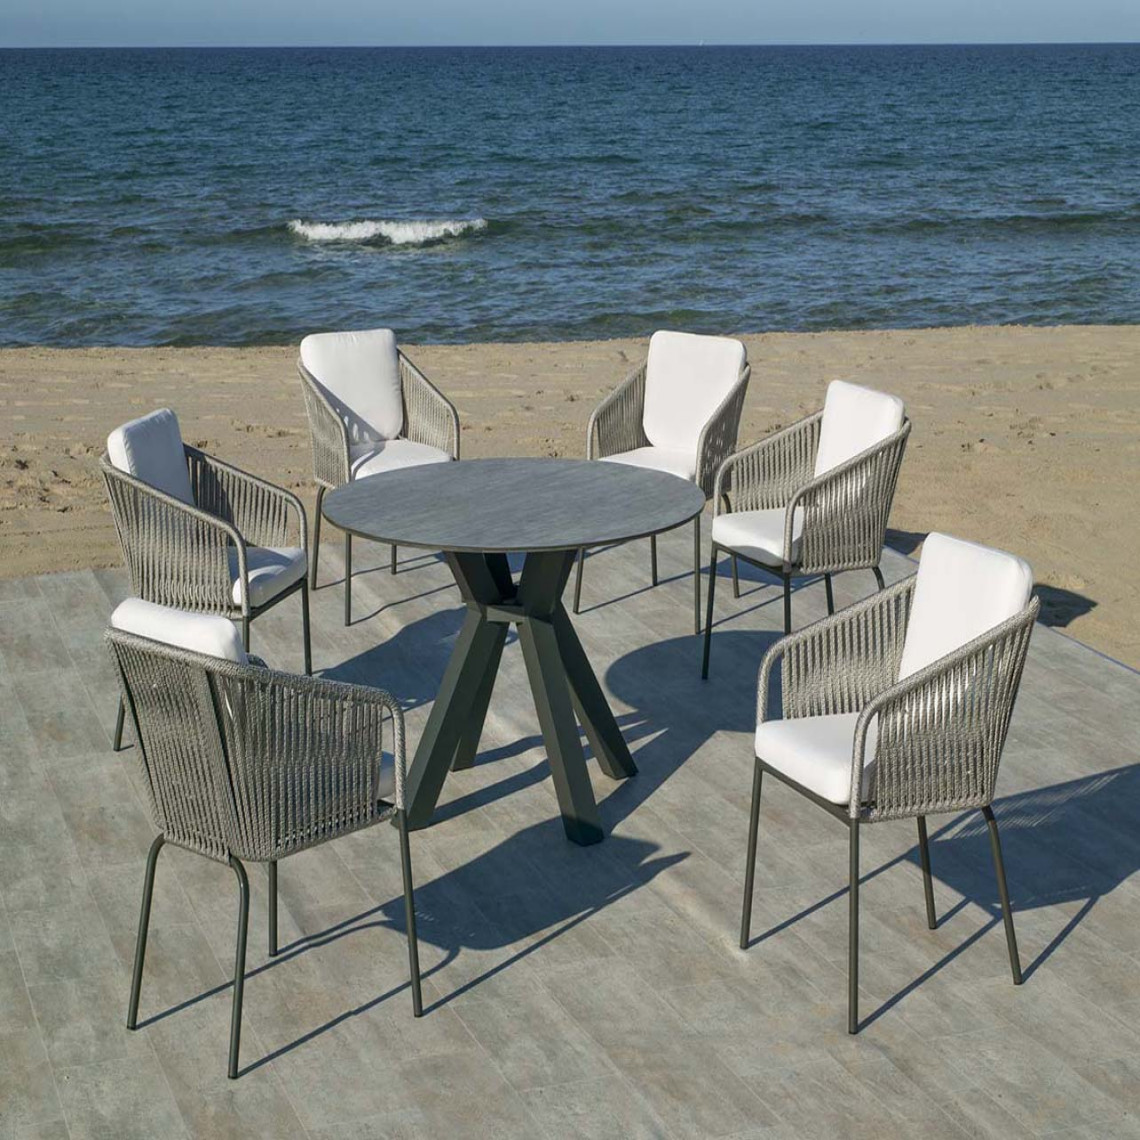 Hevea - Salon de jardin en aluminium 6 personnes Sumatra - Ensembles tables et chaises